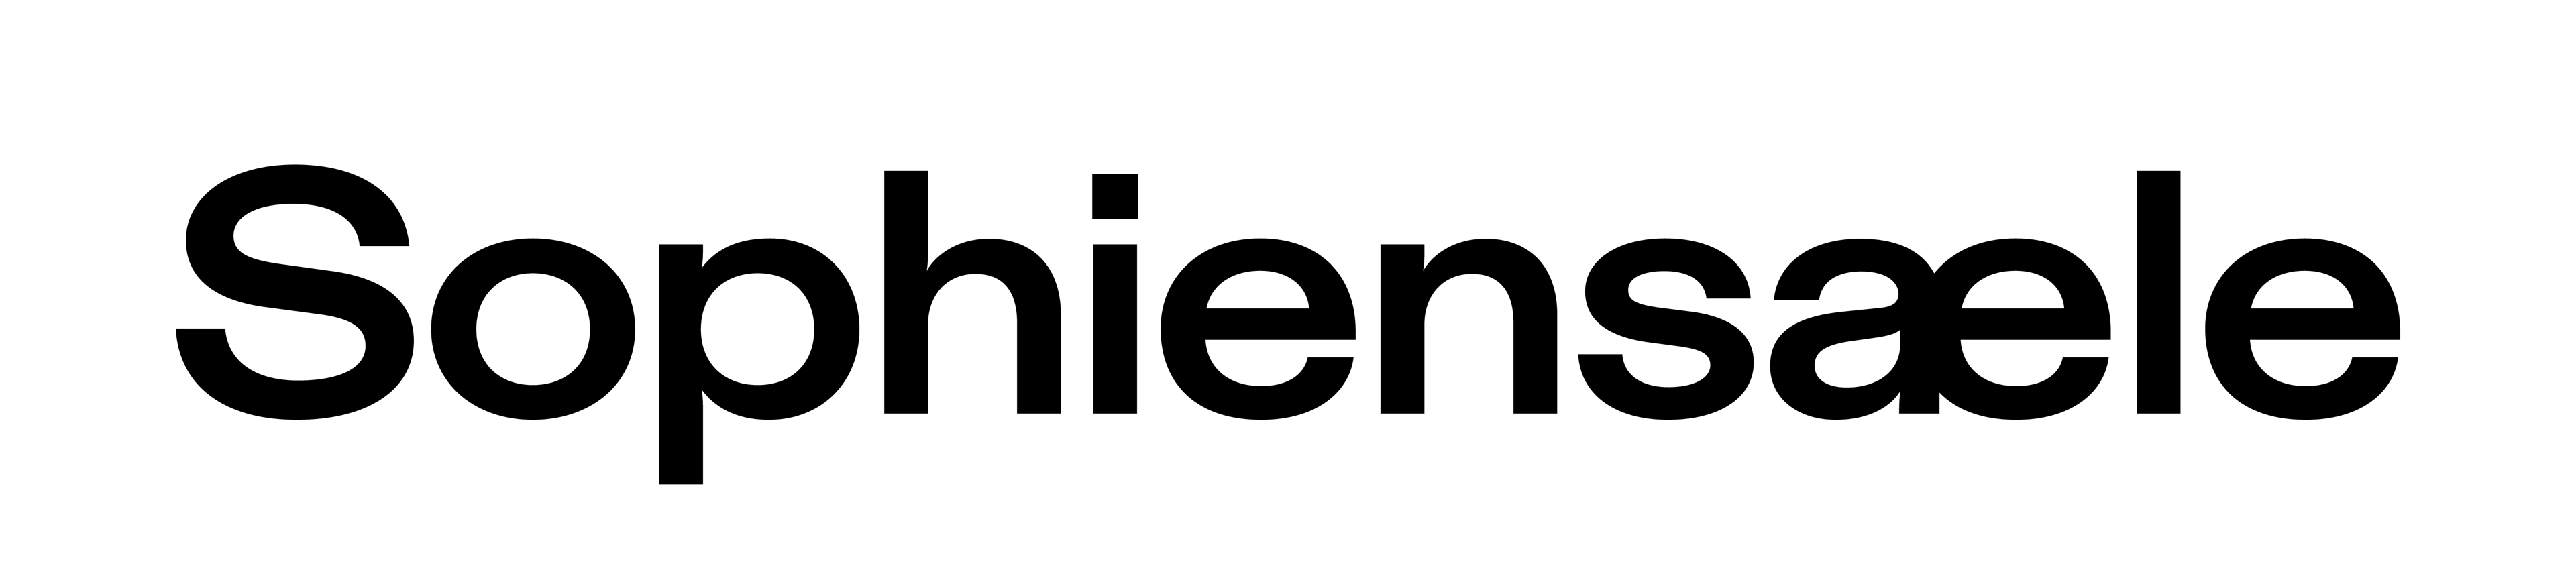 Sophiensæle logo